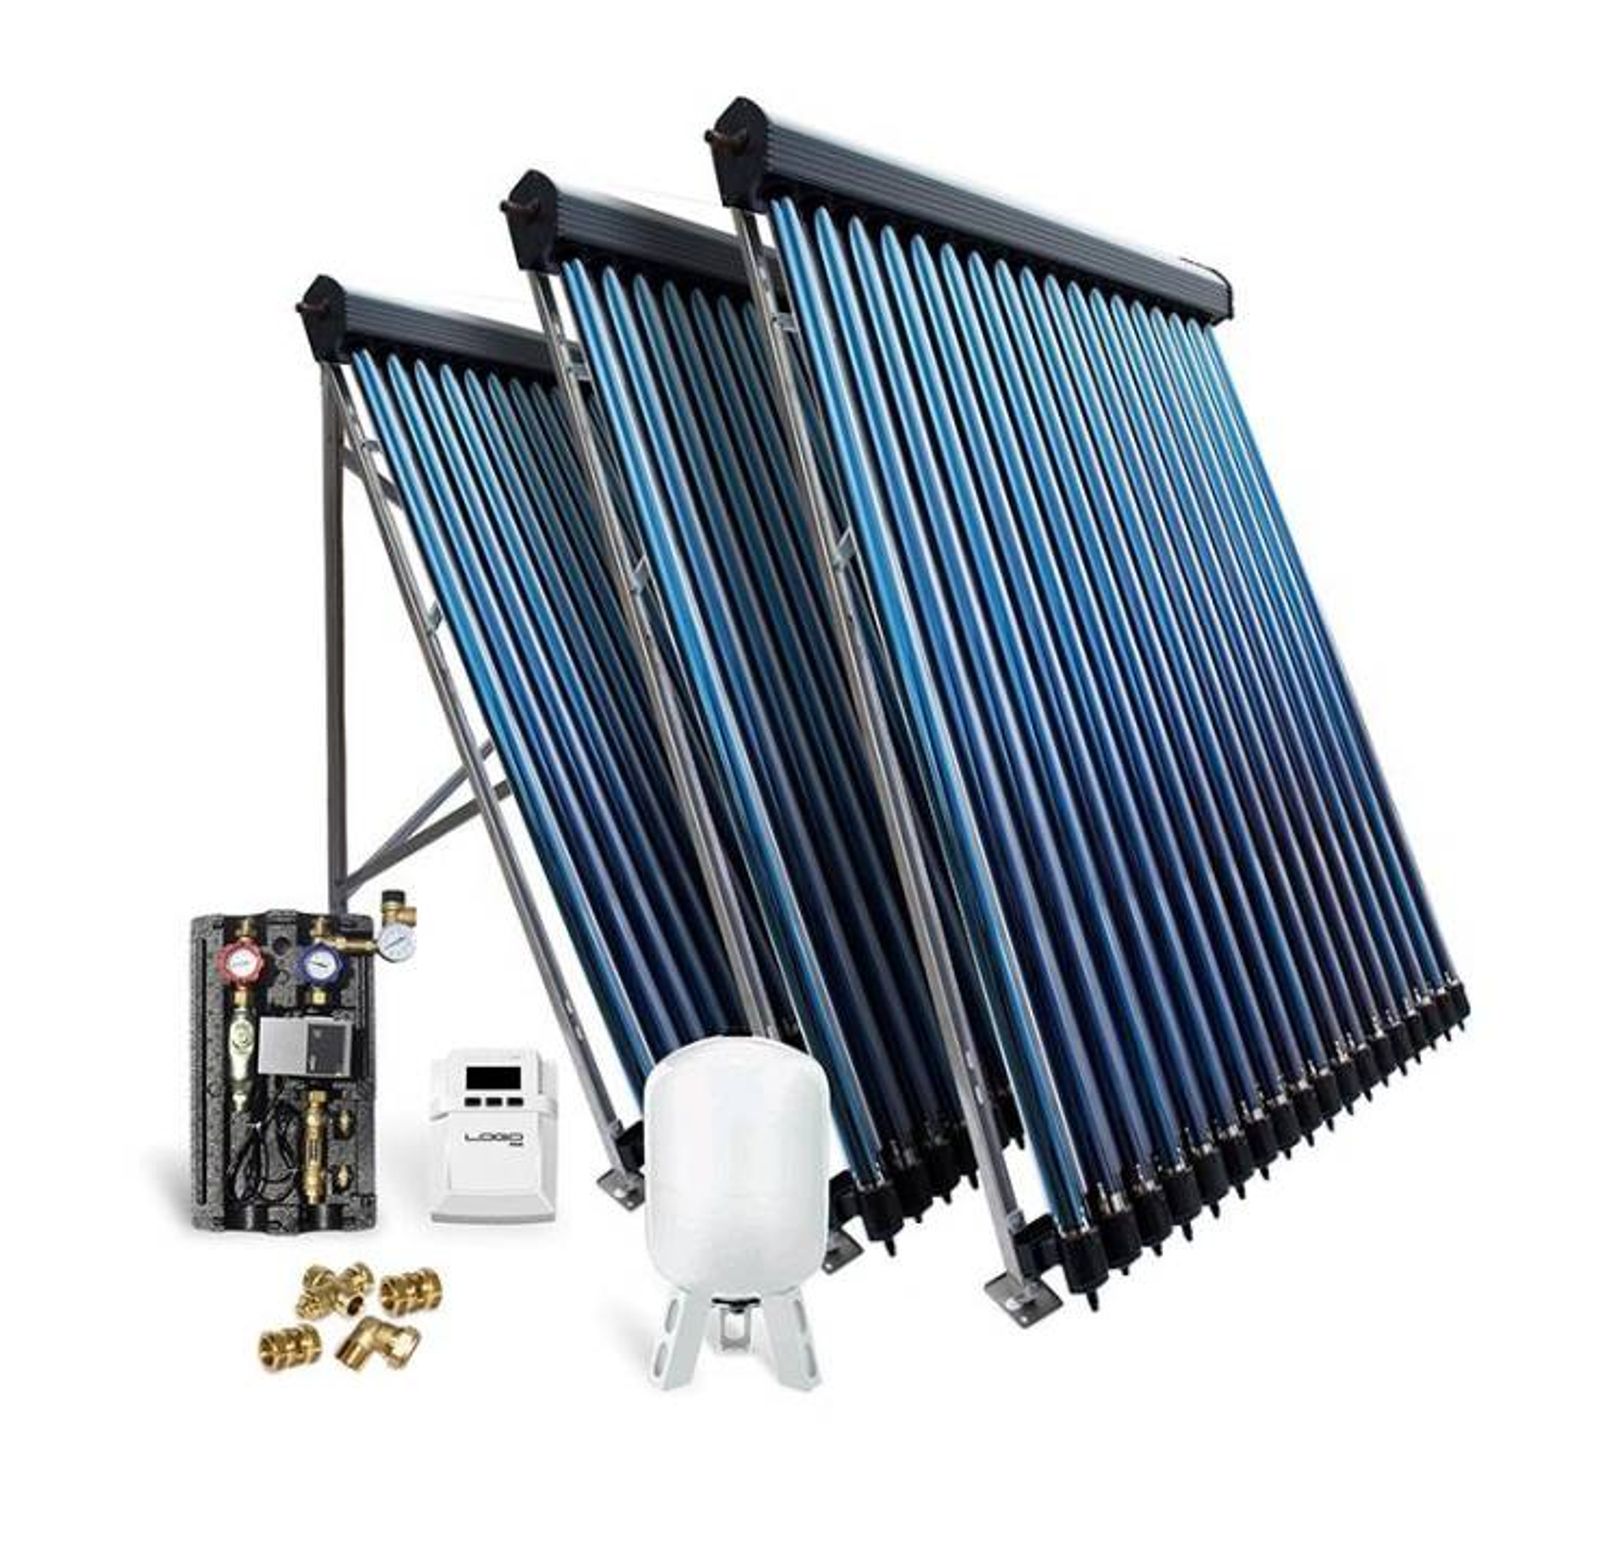 Solar-Paket Röhrenkollektor HP30 9,78 m² für Flachdach